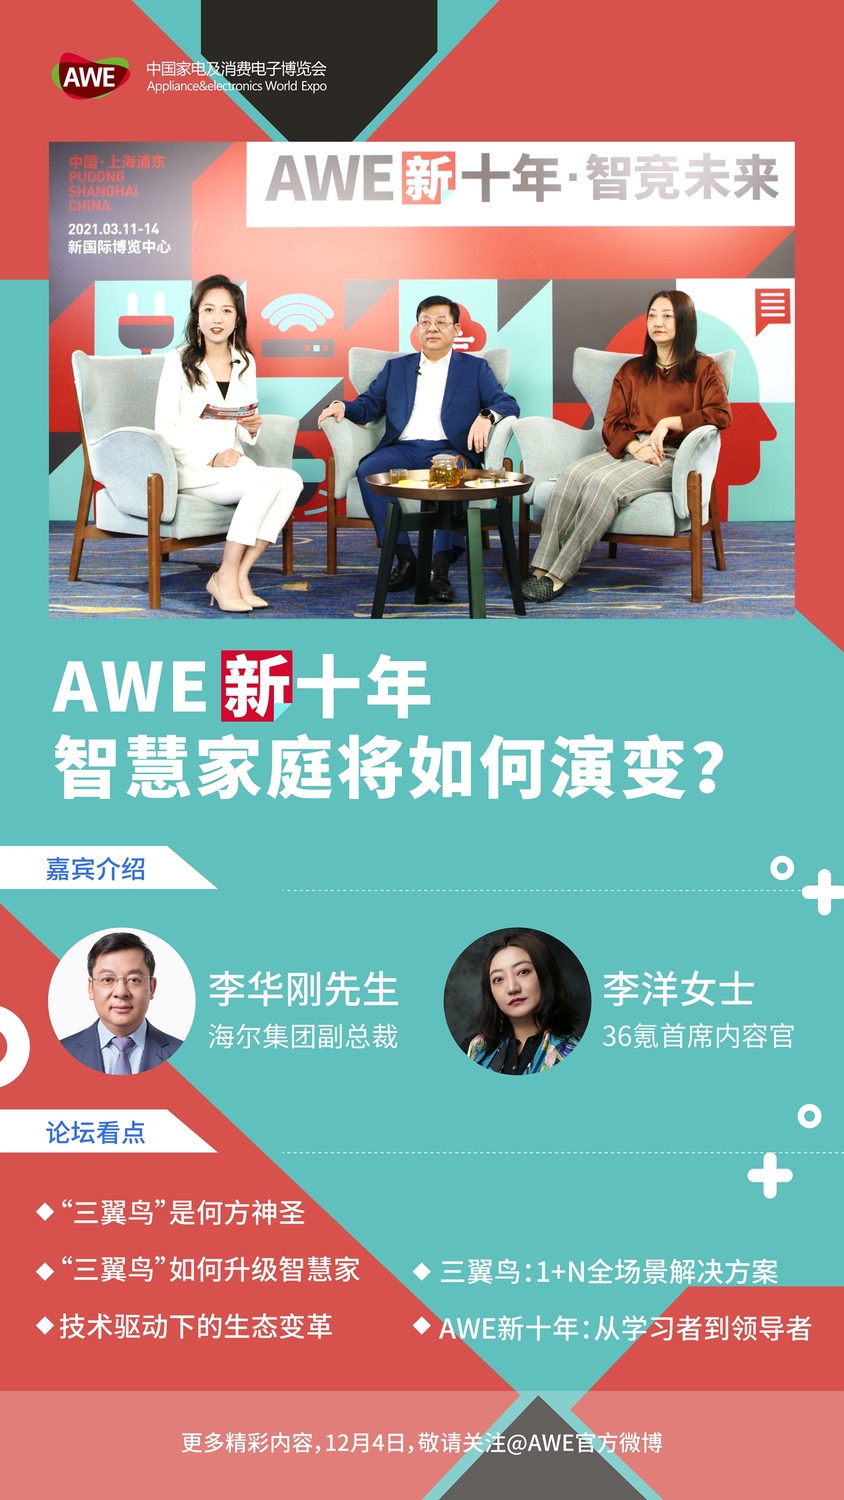 海尔集团副总裁李华刚：AWE成为展示中国家电引领世界的平台